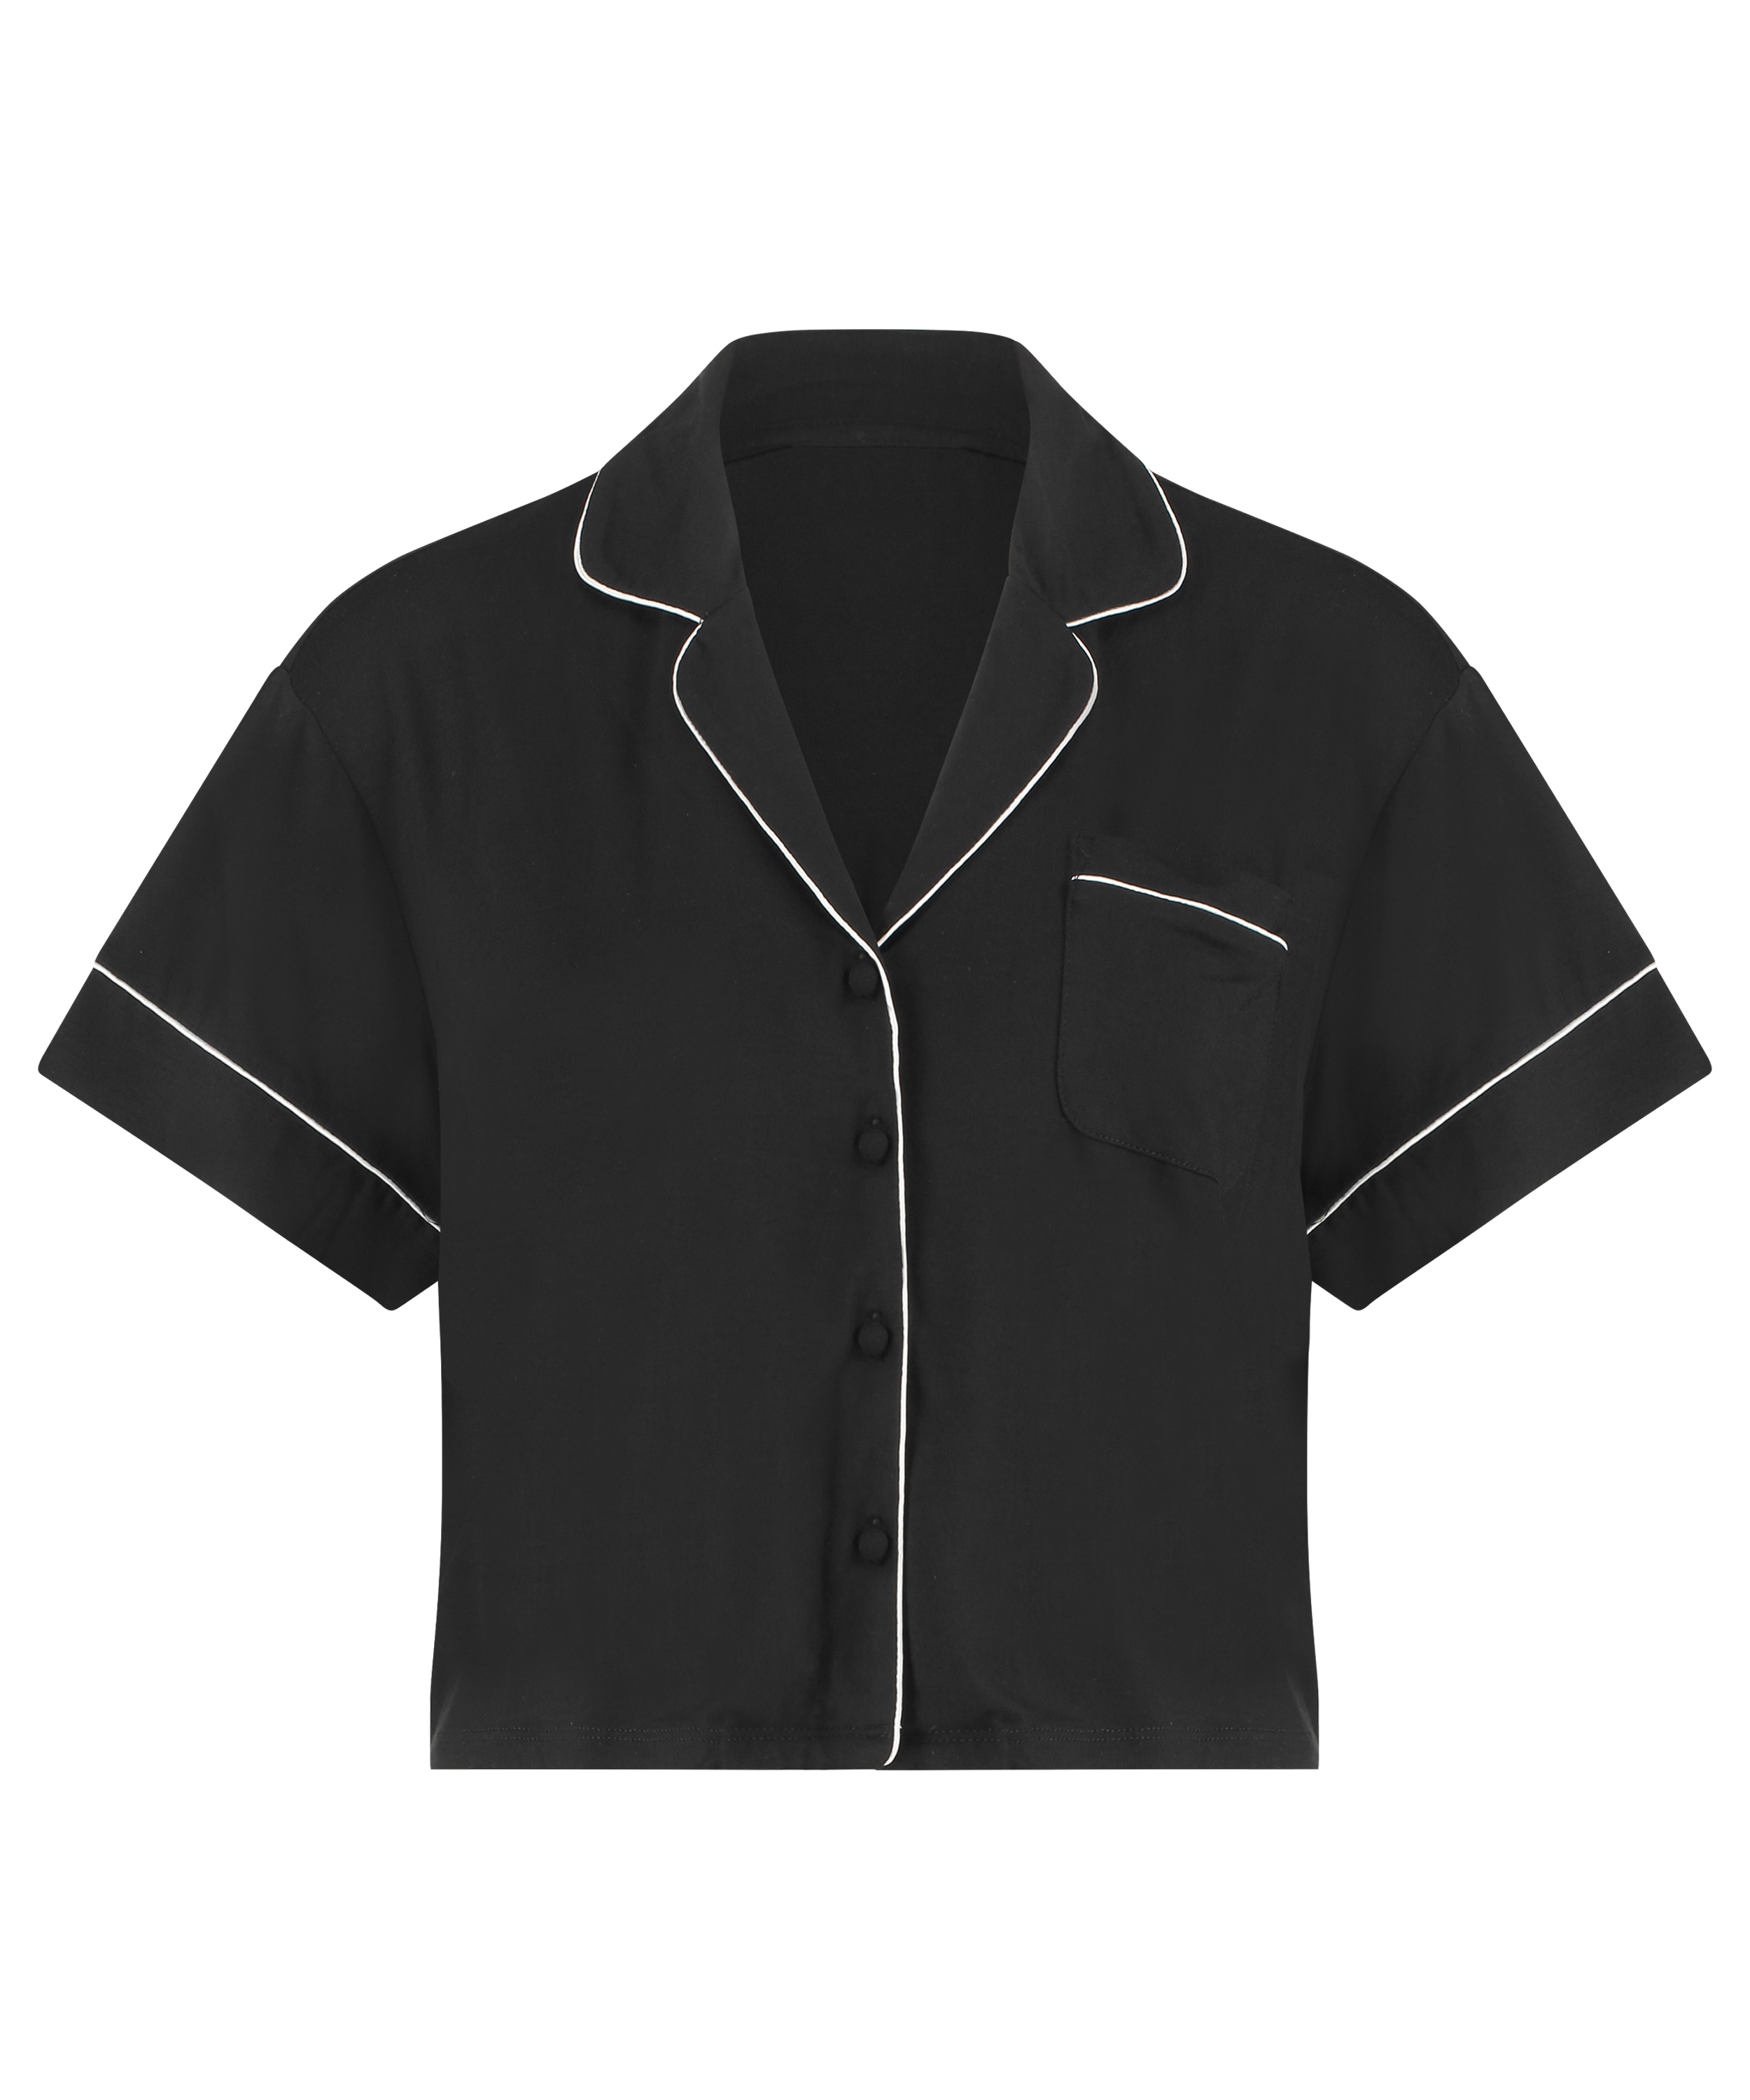 Jacket Jersey Essential voor €17.5 - Tops & T-shirts - Hunkemöller